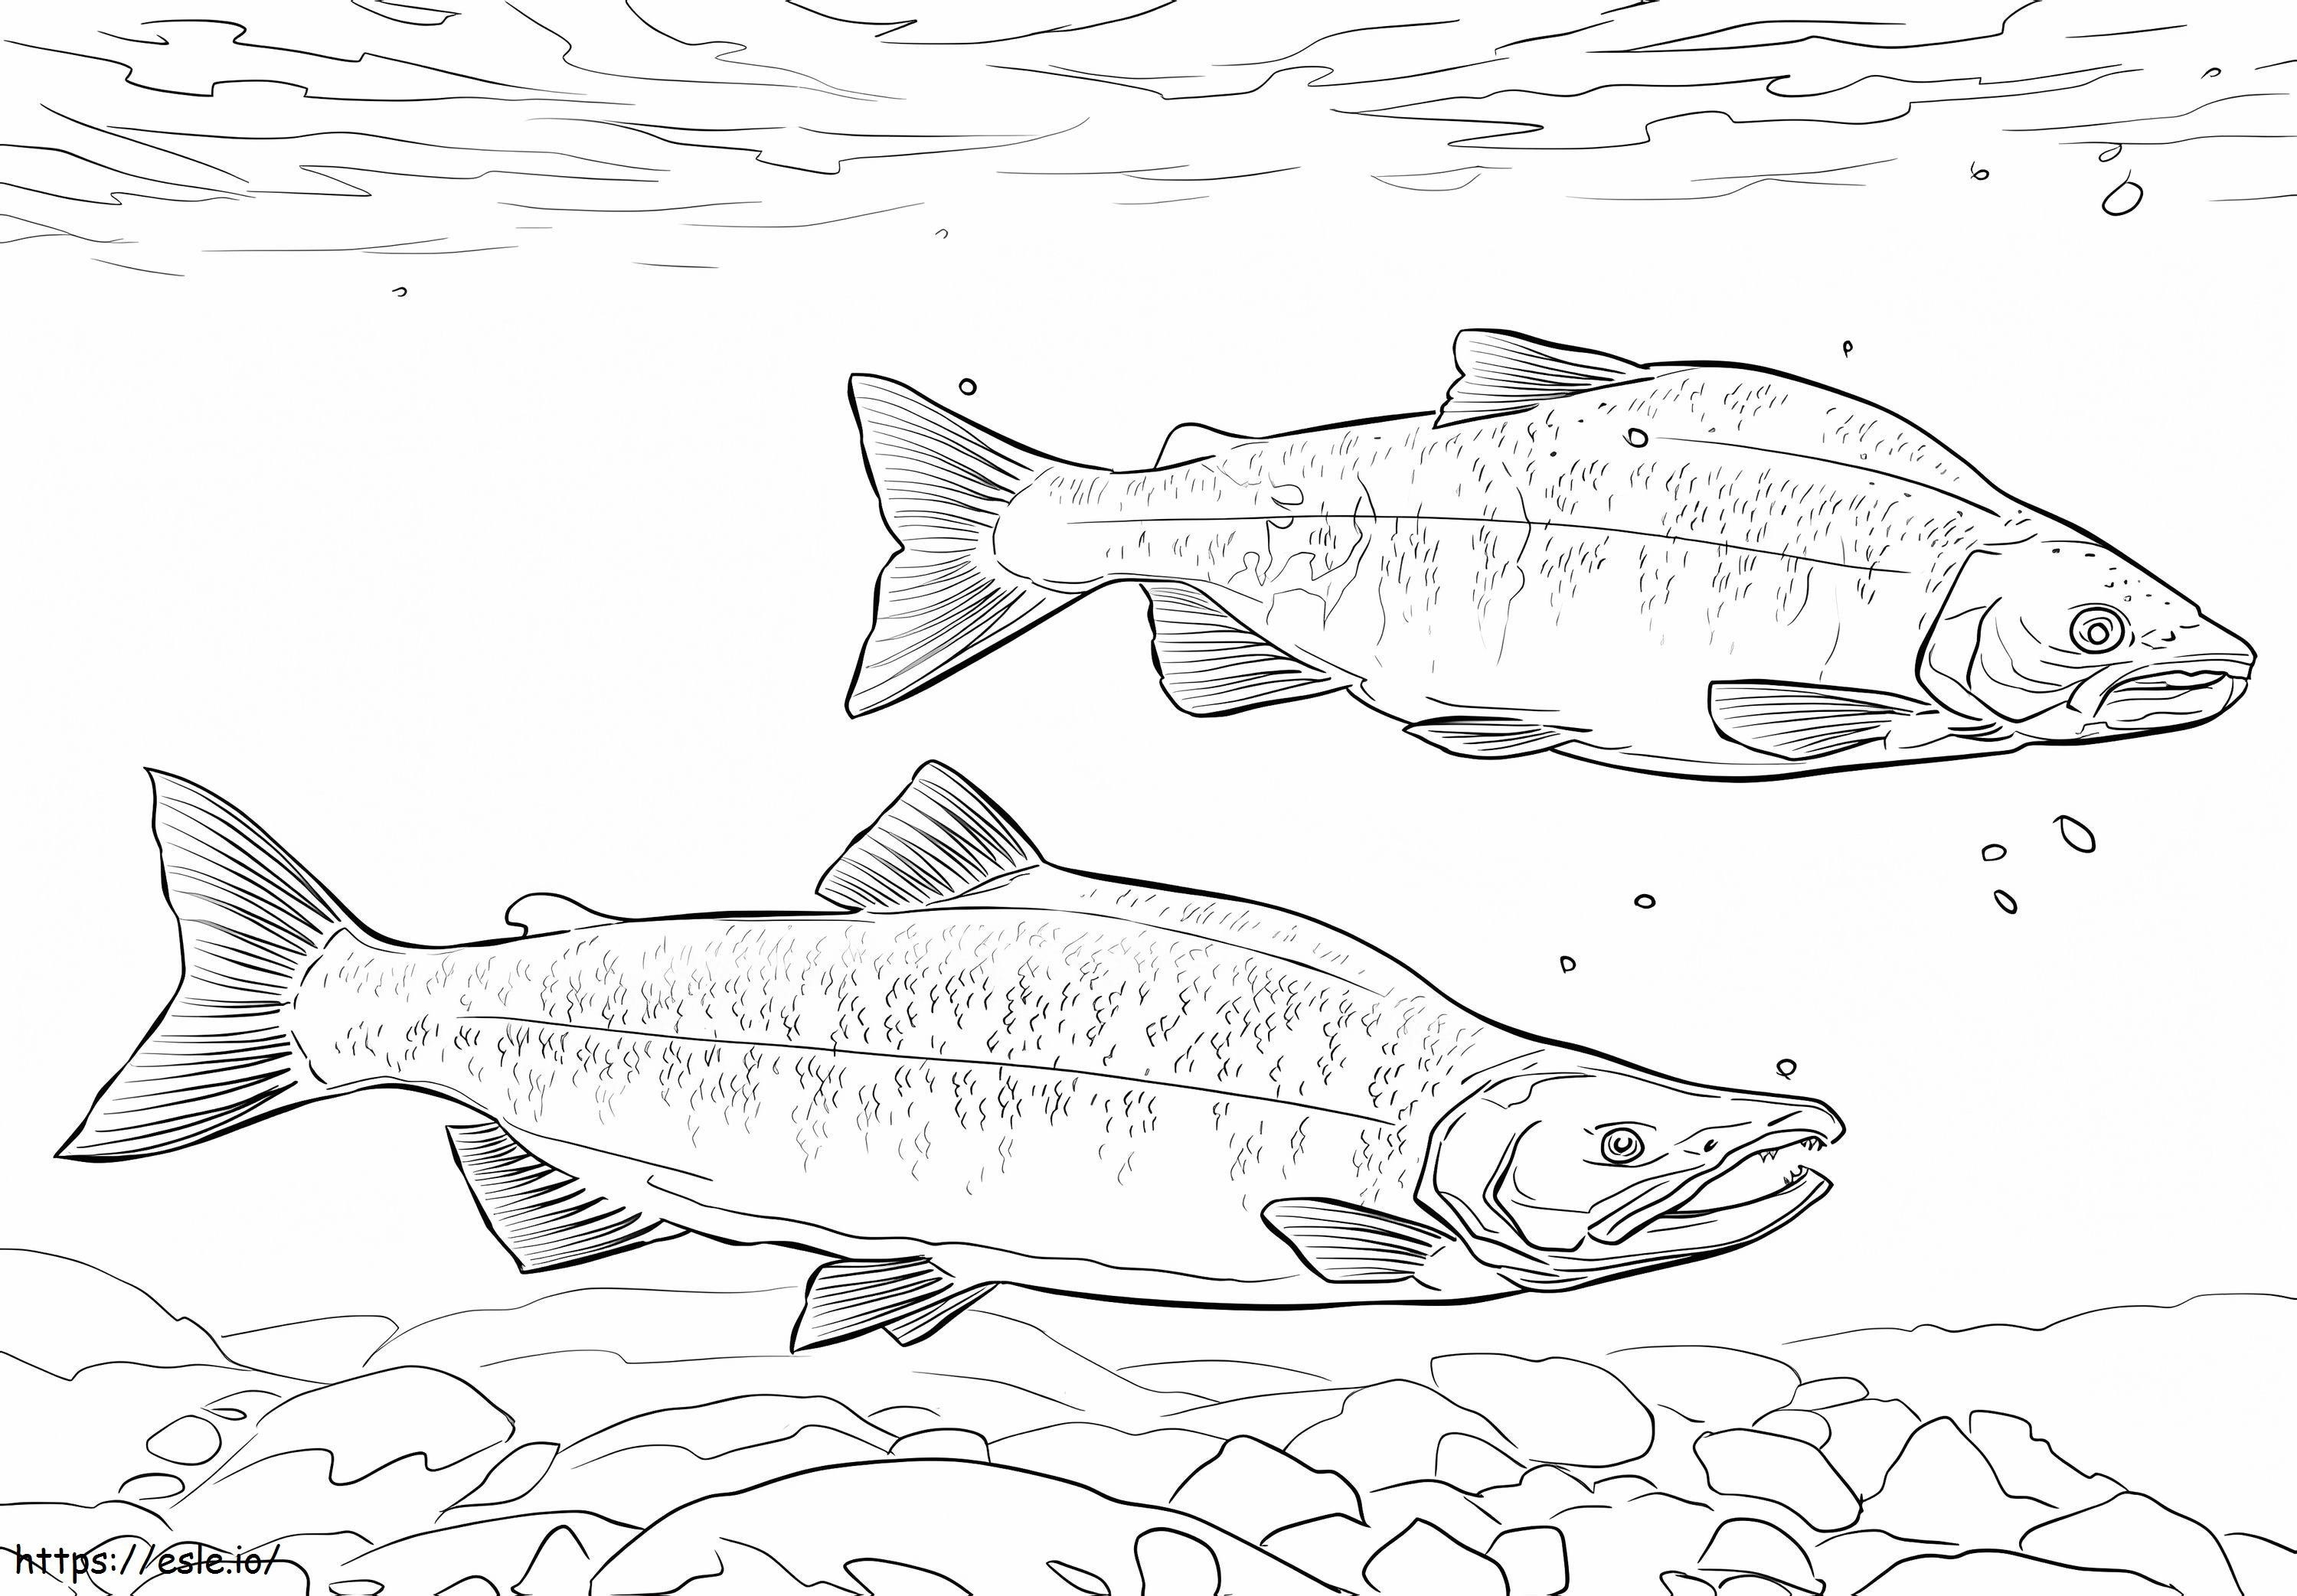 Kokanee Salmon coloring page